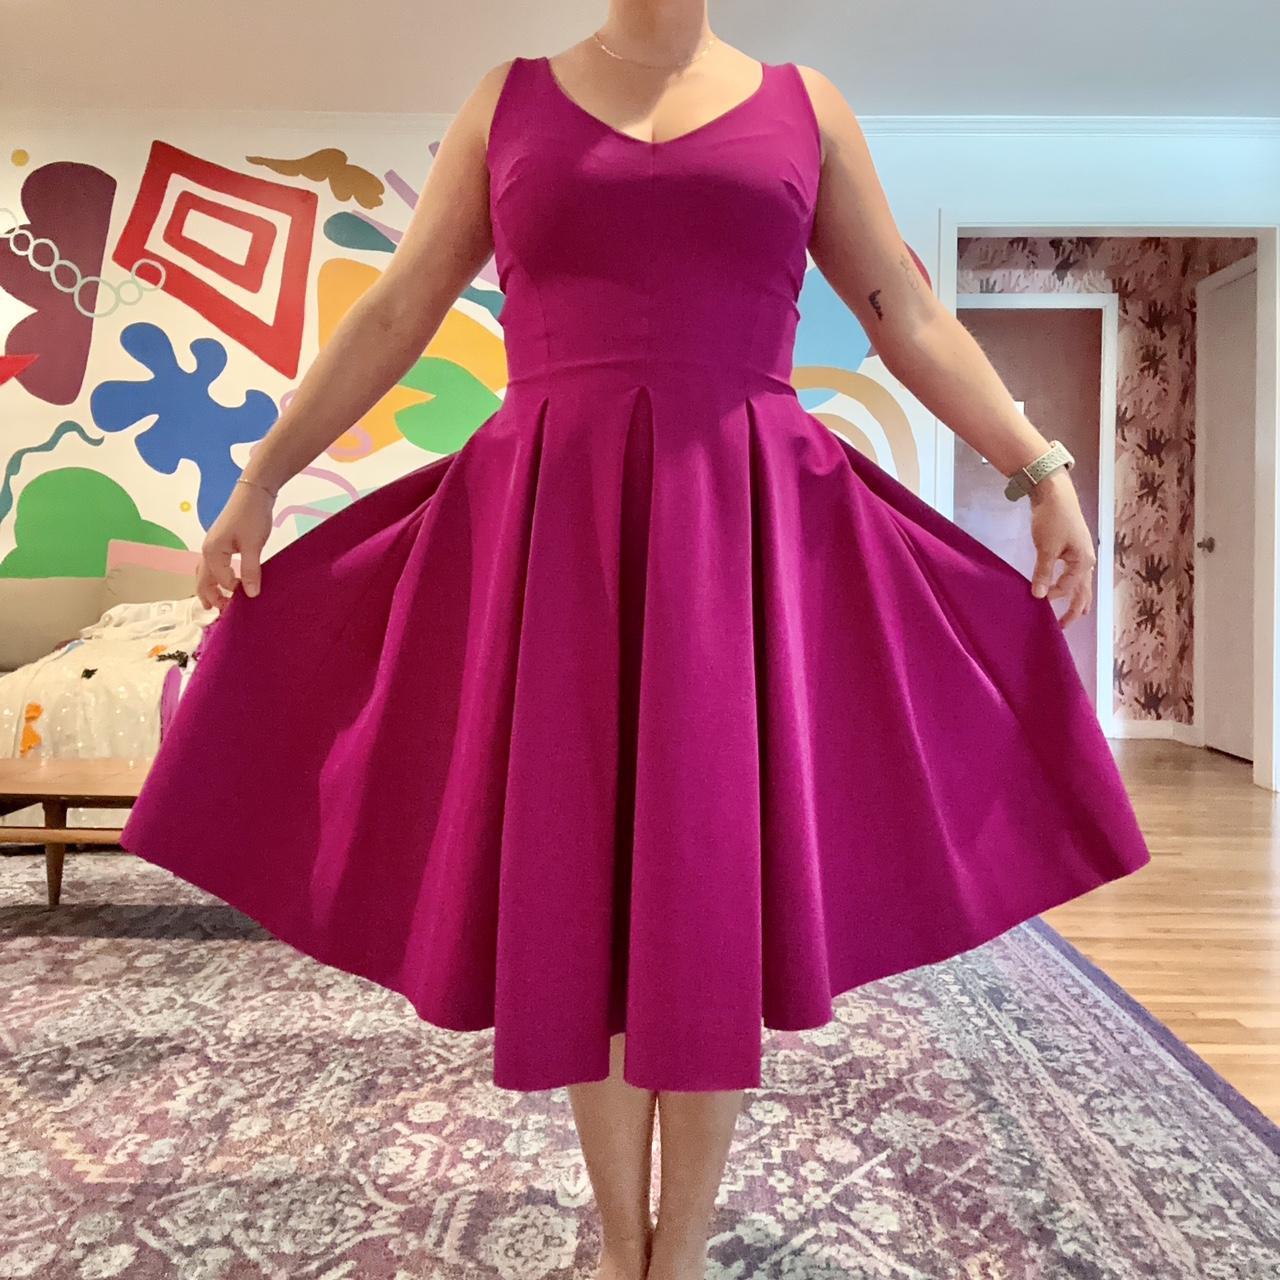 Chiara Boni La Petite Robe Women's Pink Dress